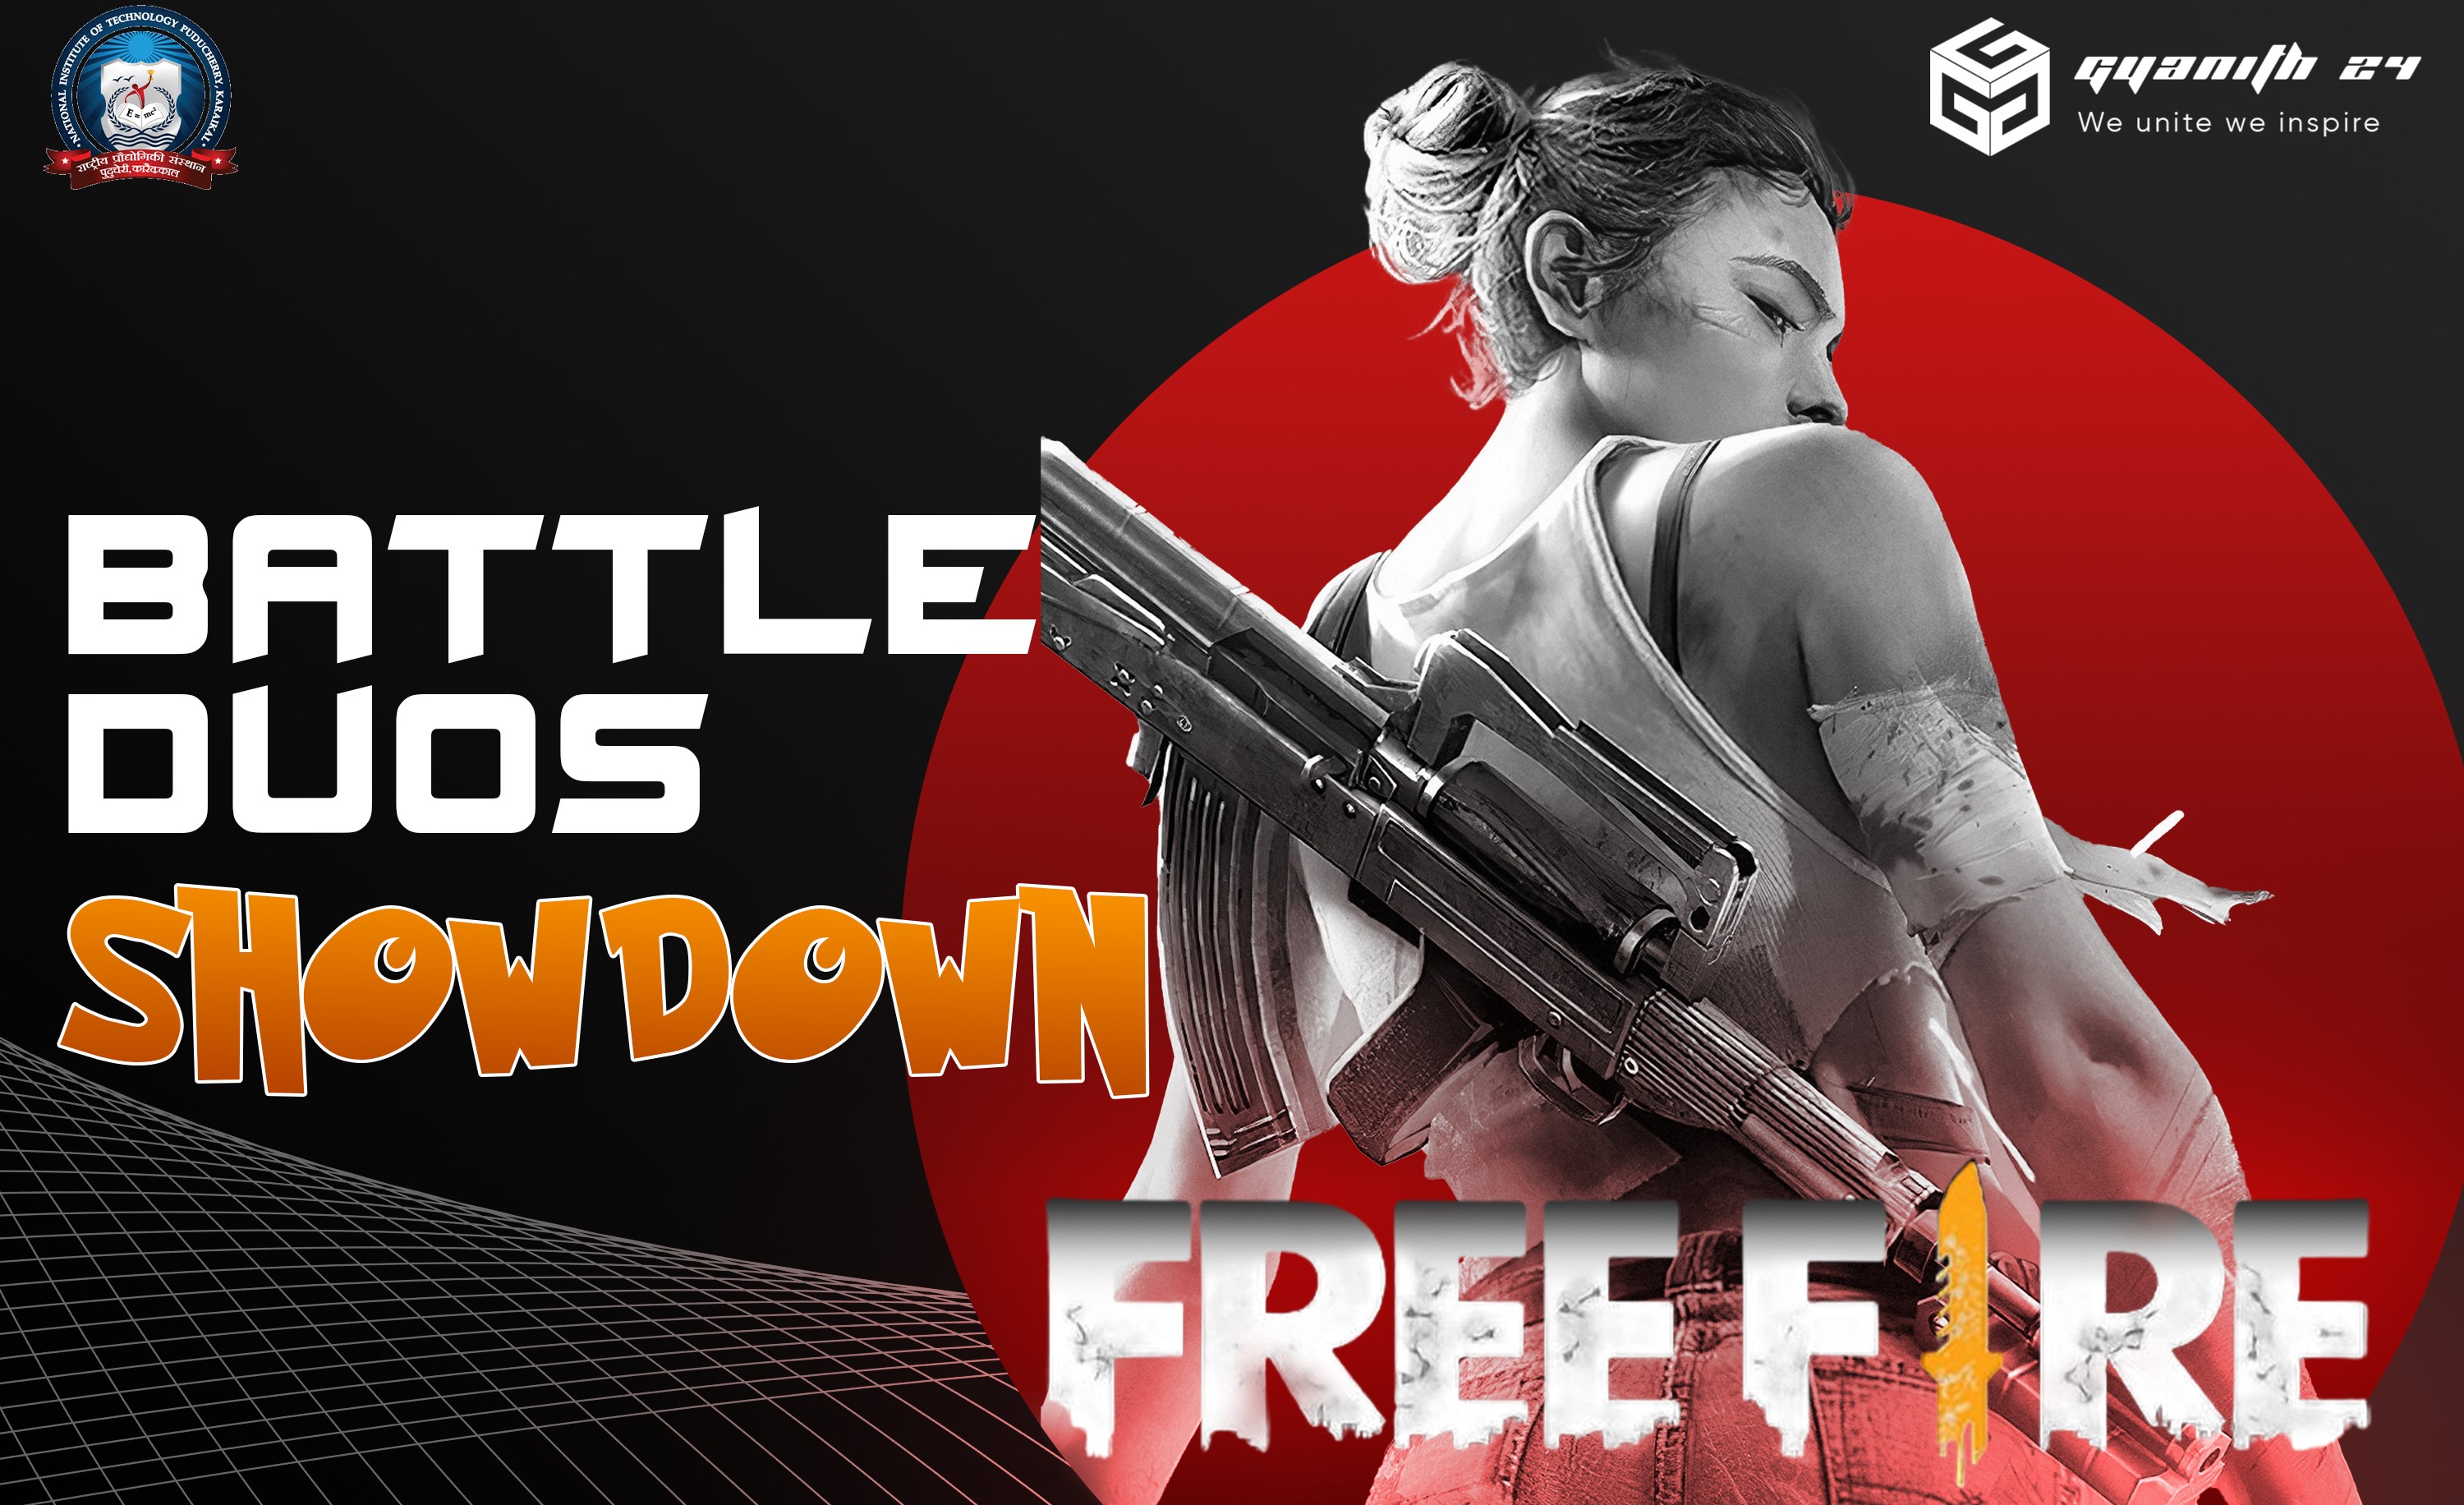 Battle duos showdown(Free Fire)